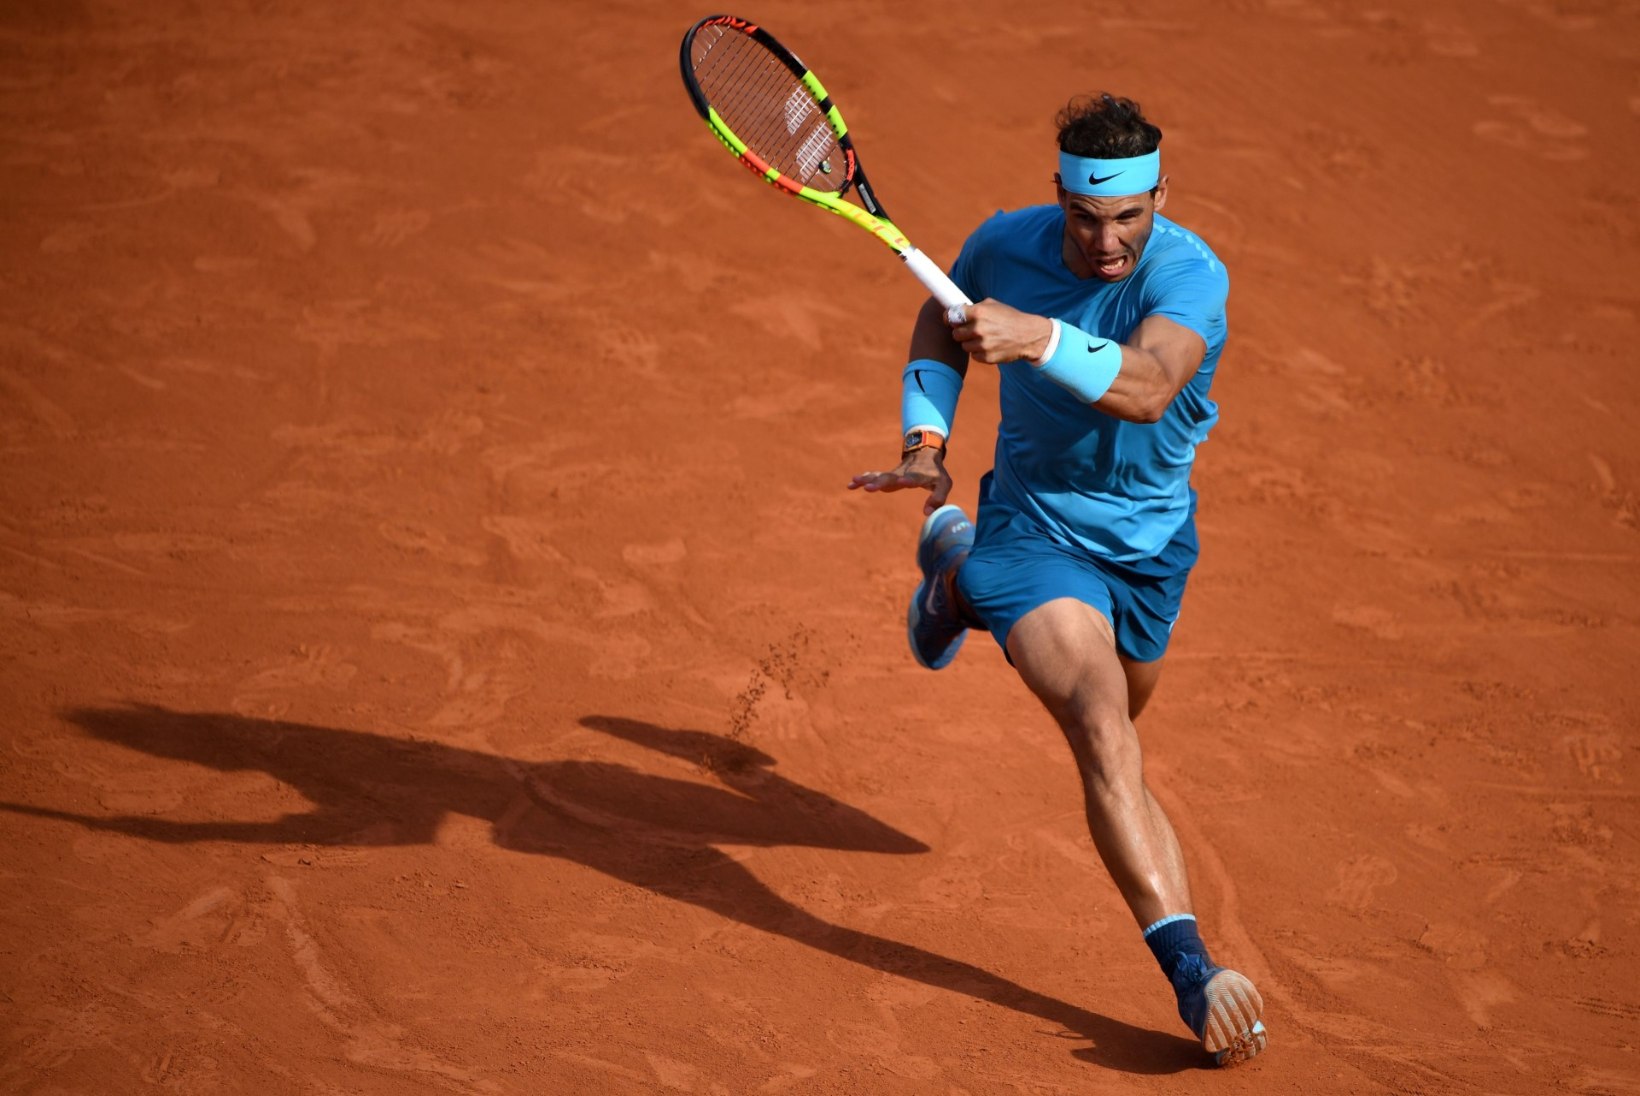 Prantsusmaa lahtised: Itaalia imemehe tee lõppes poolfinaalis, Nadal näitas musklit ja võidab ilmselt turniiri